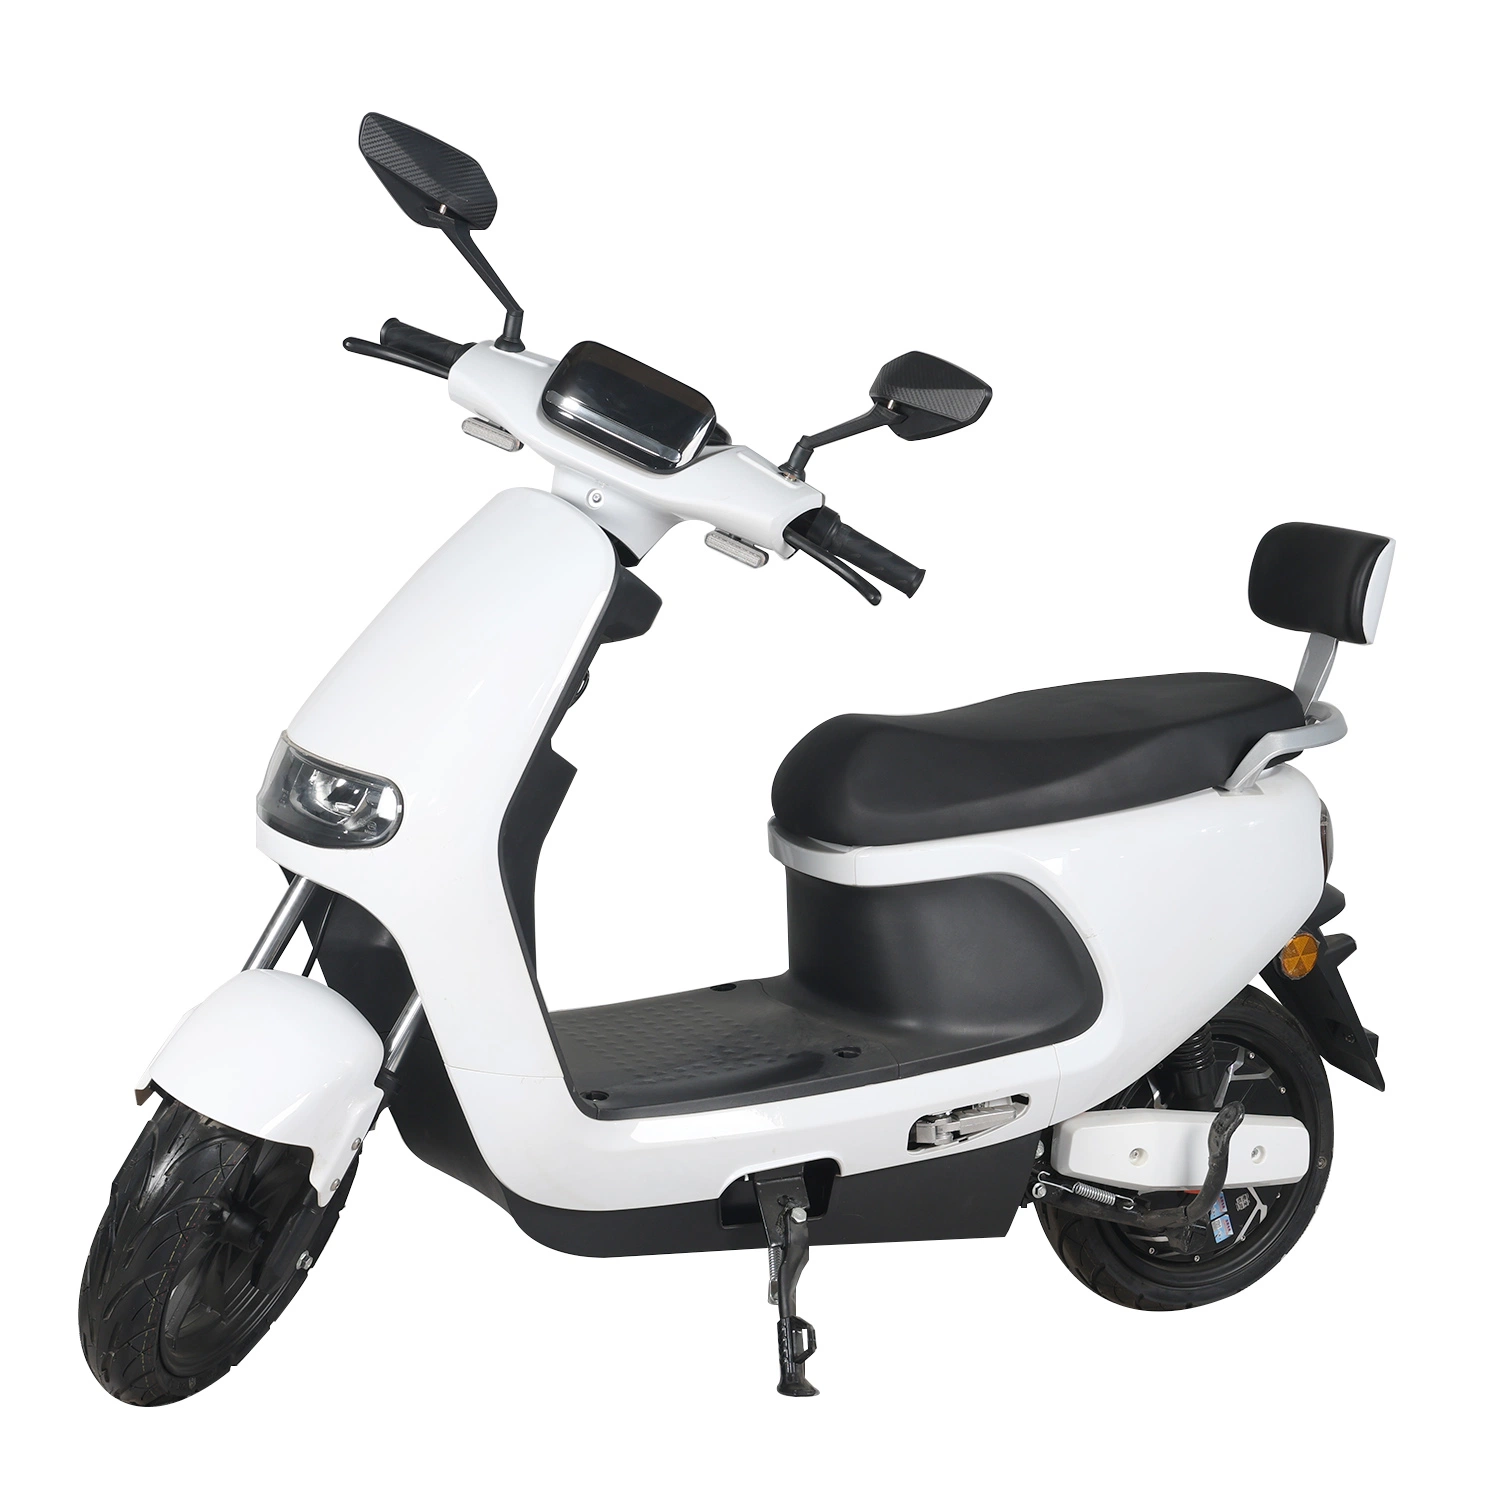 1000W motocicleta eléctrica mejor-vendedor con batería de litio portátil Sport Moped E-Scooter para adultos